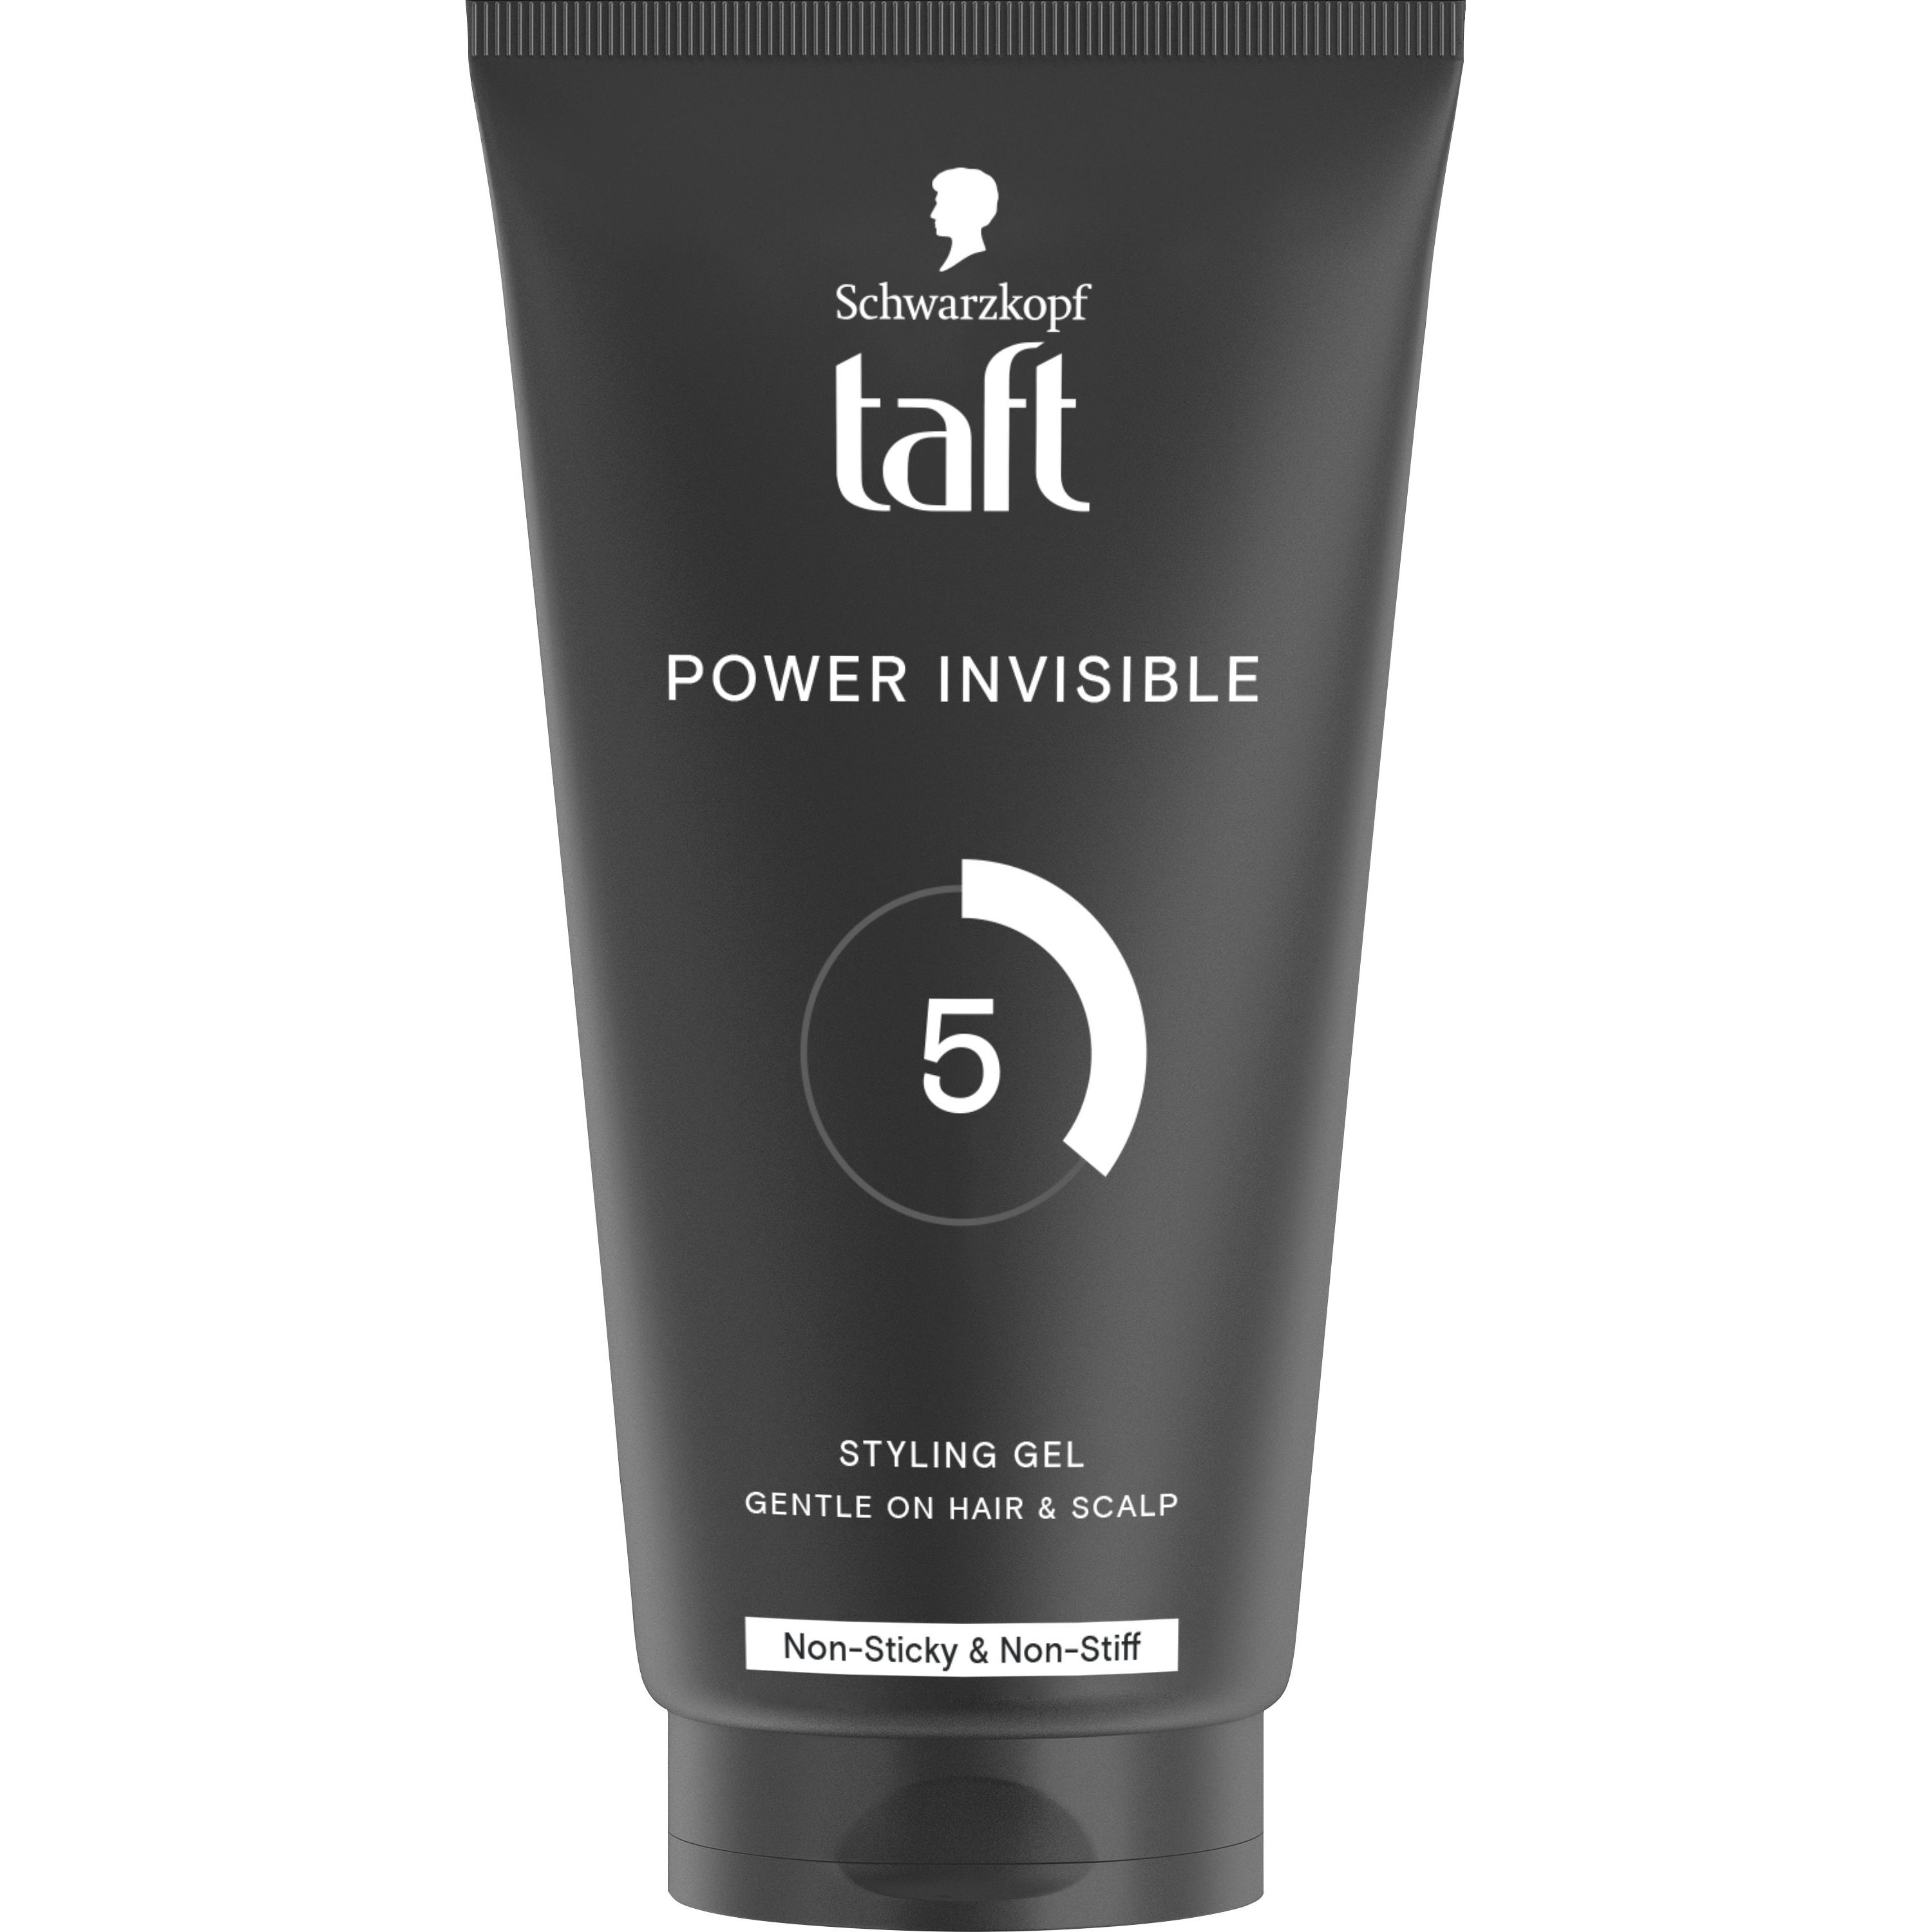 Гель для волосся Taft Power Invisible, 150 мл - фото 1